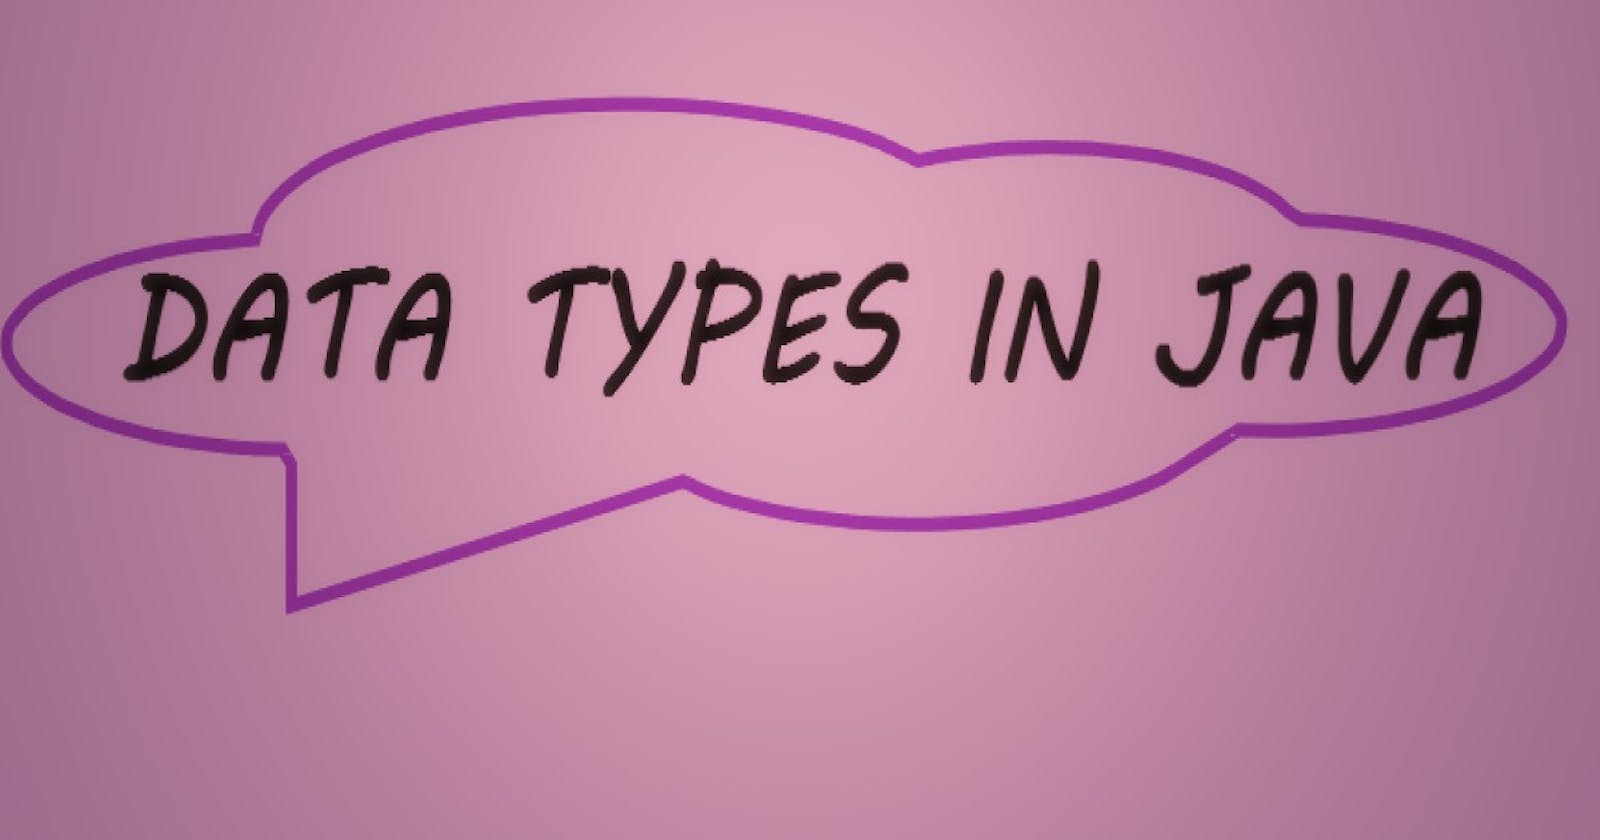 Java Data Types